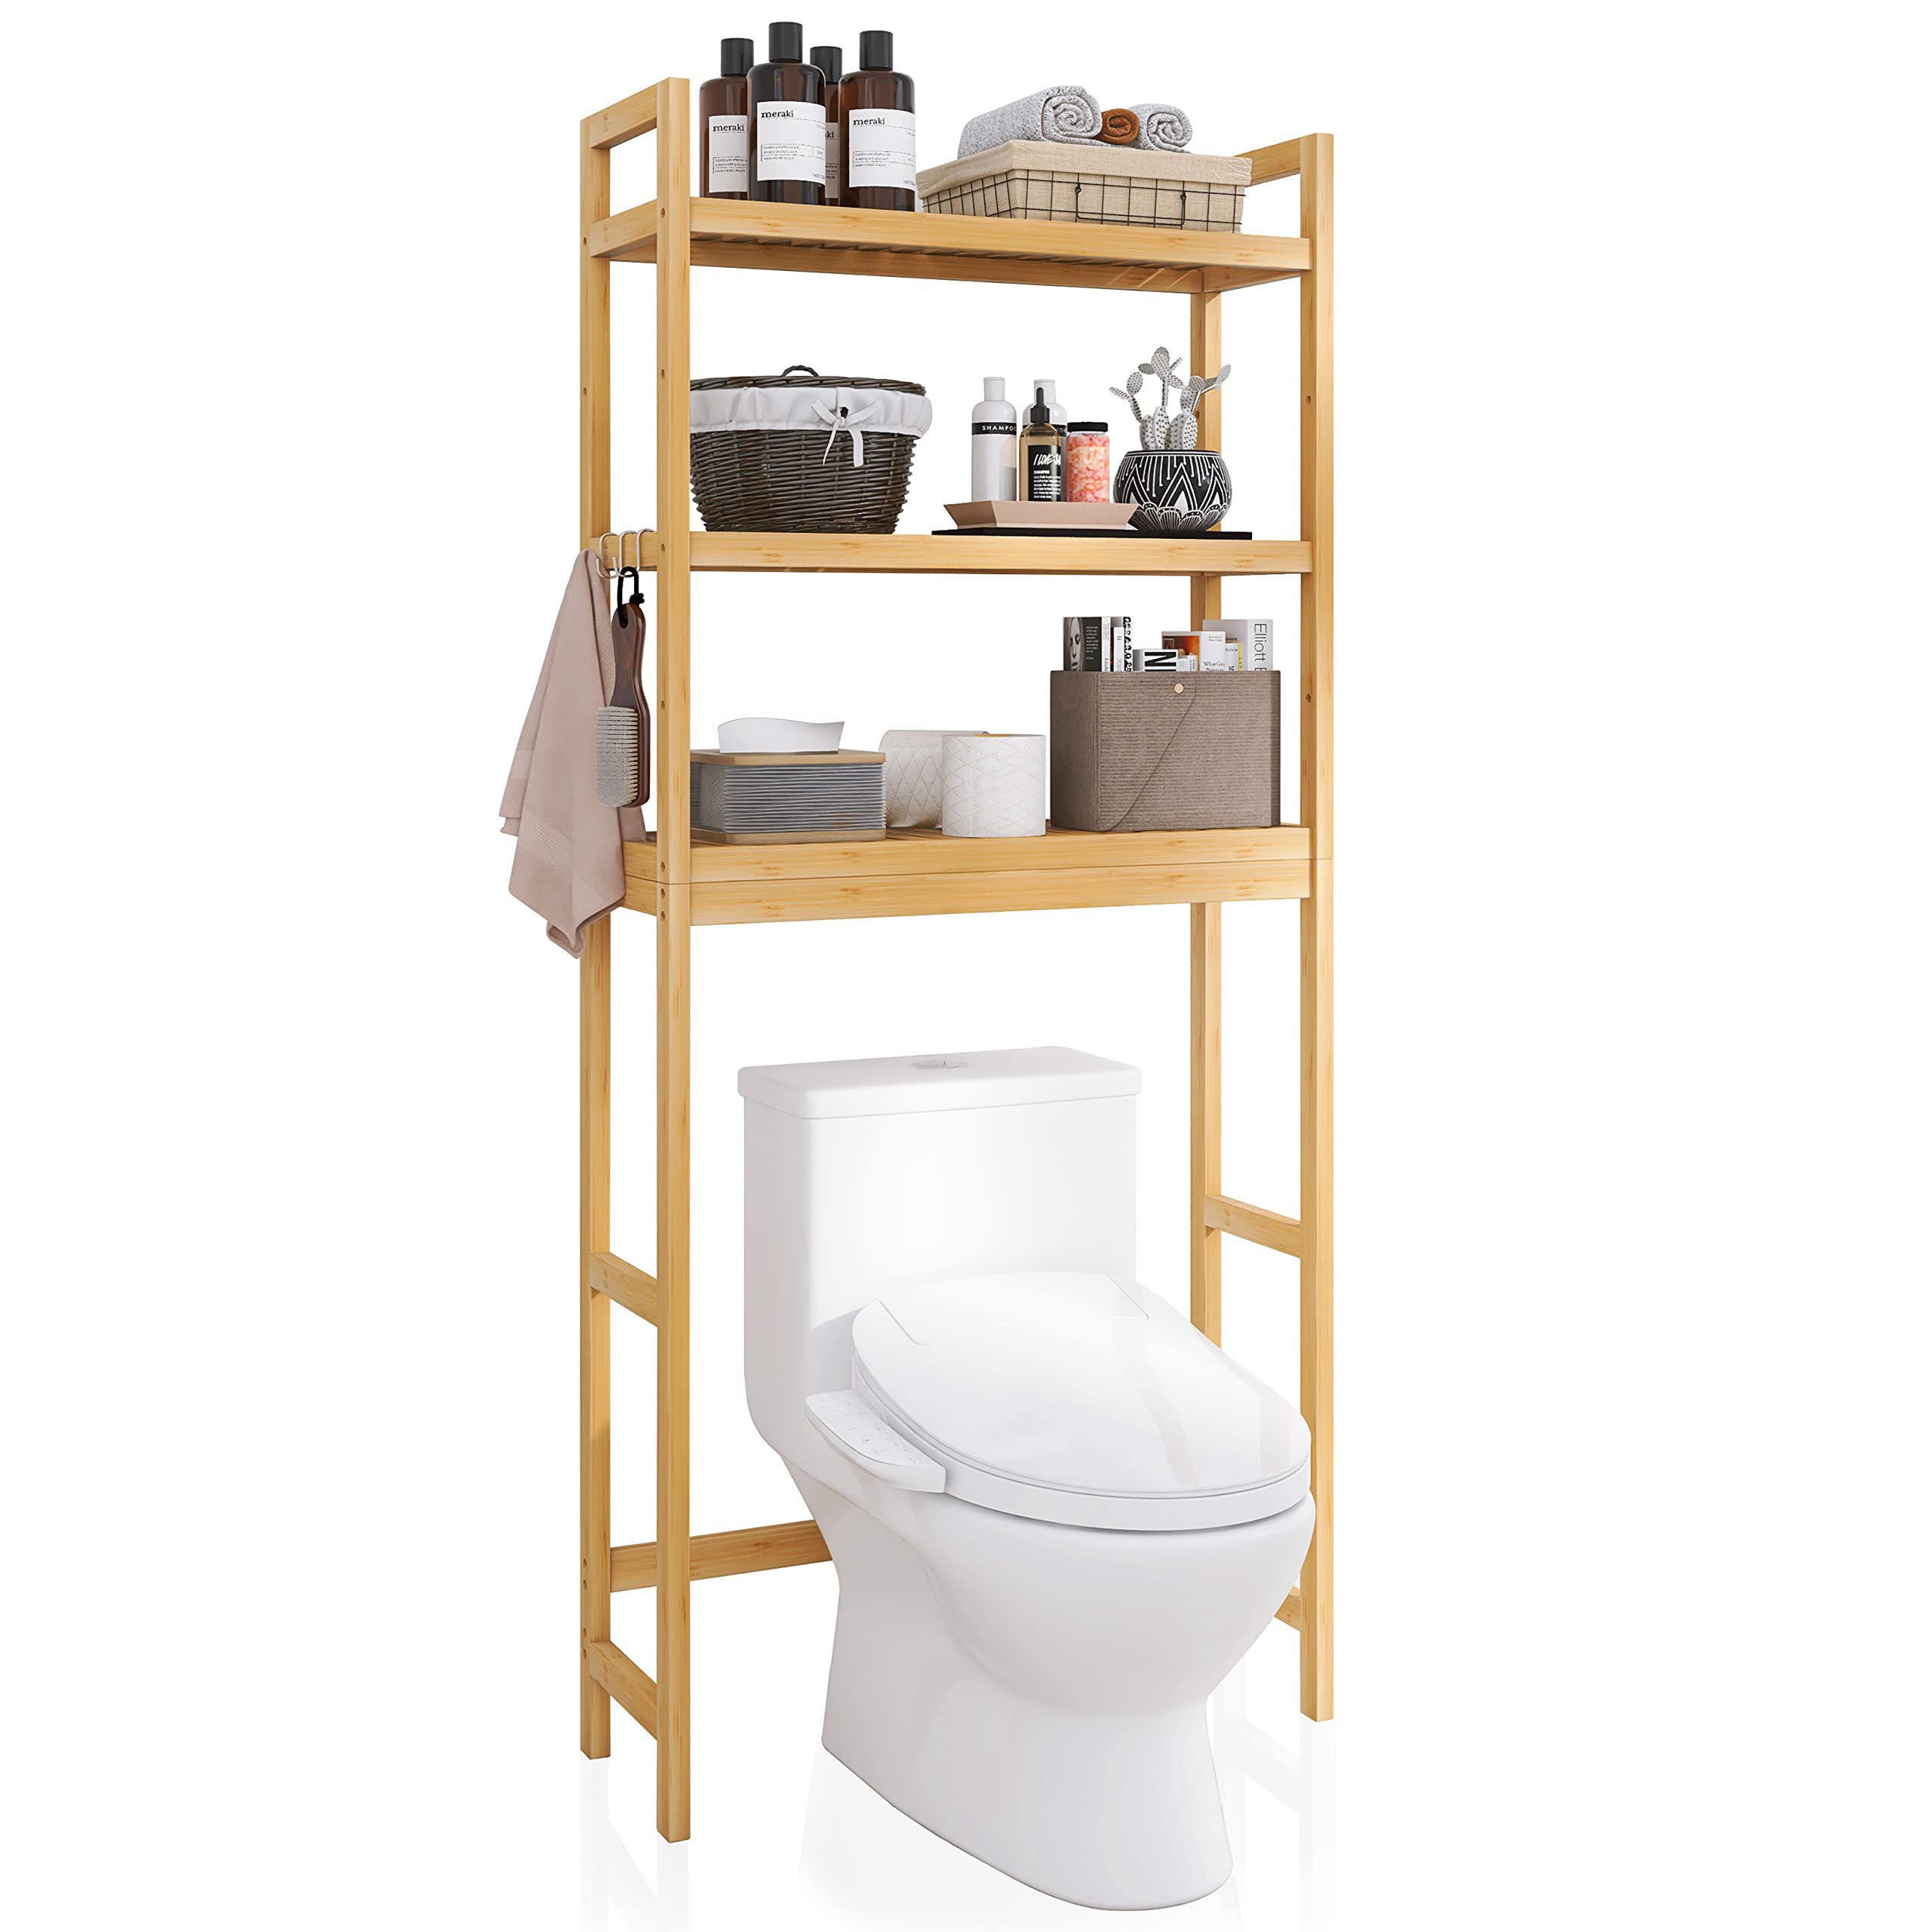 https://assets.wfcdn.com/im/13441463/compr-r85/2385/238547008/beka-solid-wood-freestanding-over-the-toilet-storage.jpg